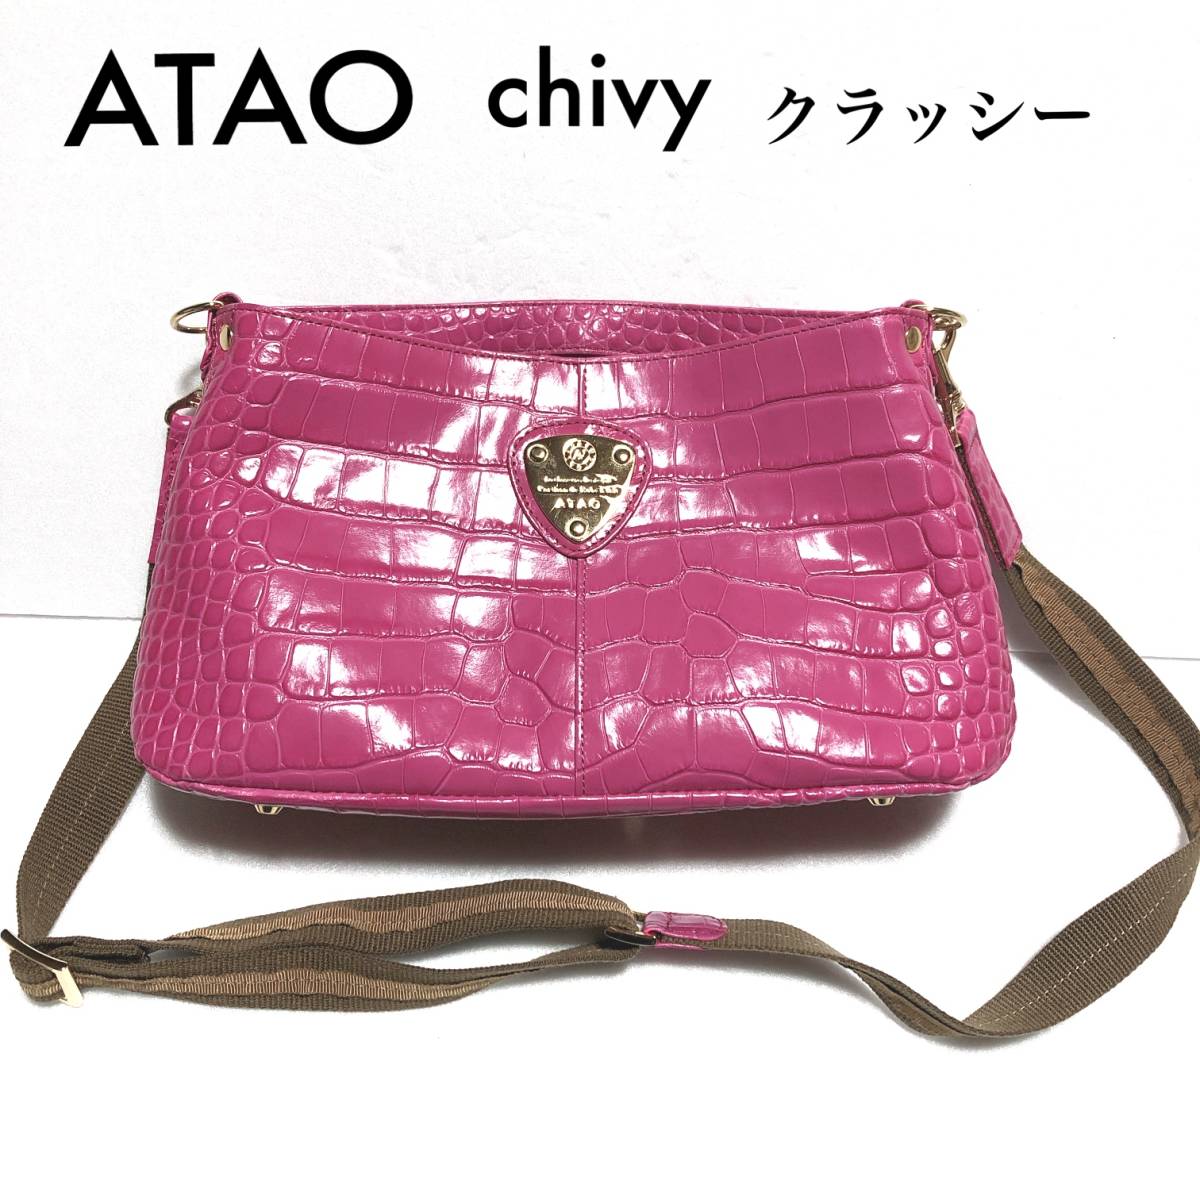 ATAO chivy クラッシー 3WAYバッグ/アタオ チヴィ クロコ型押し レザー ラズベリー